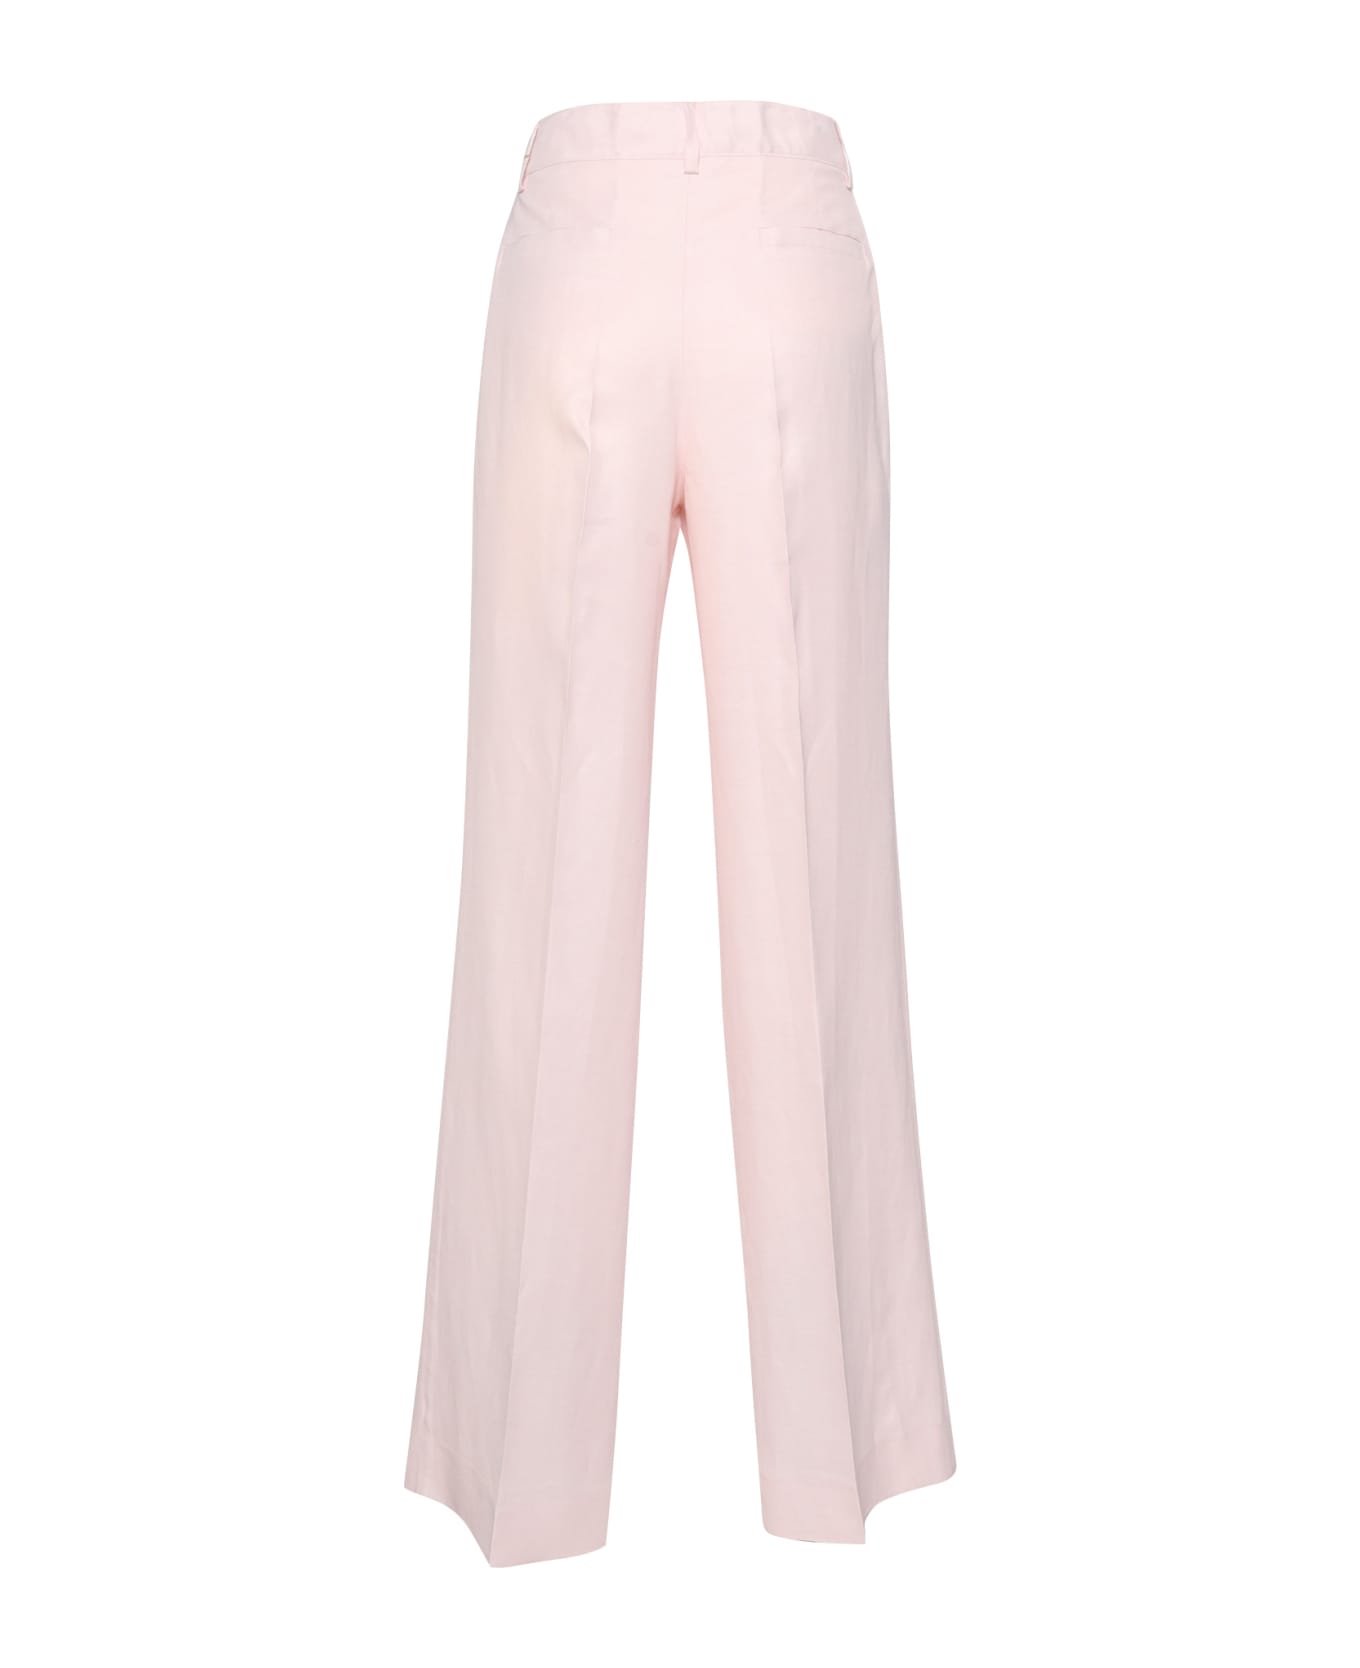 Parosh Pantalone Elegante Donna - PINK